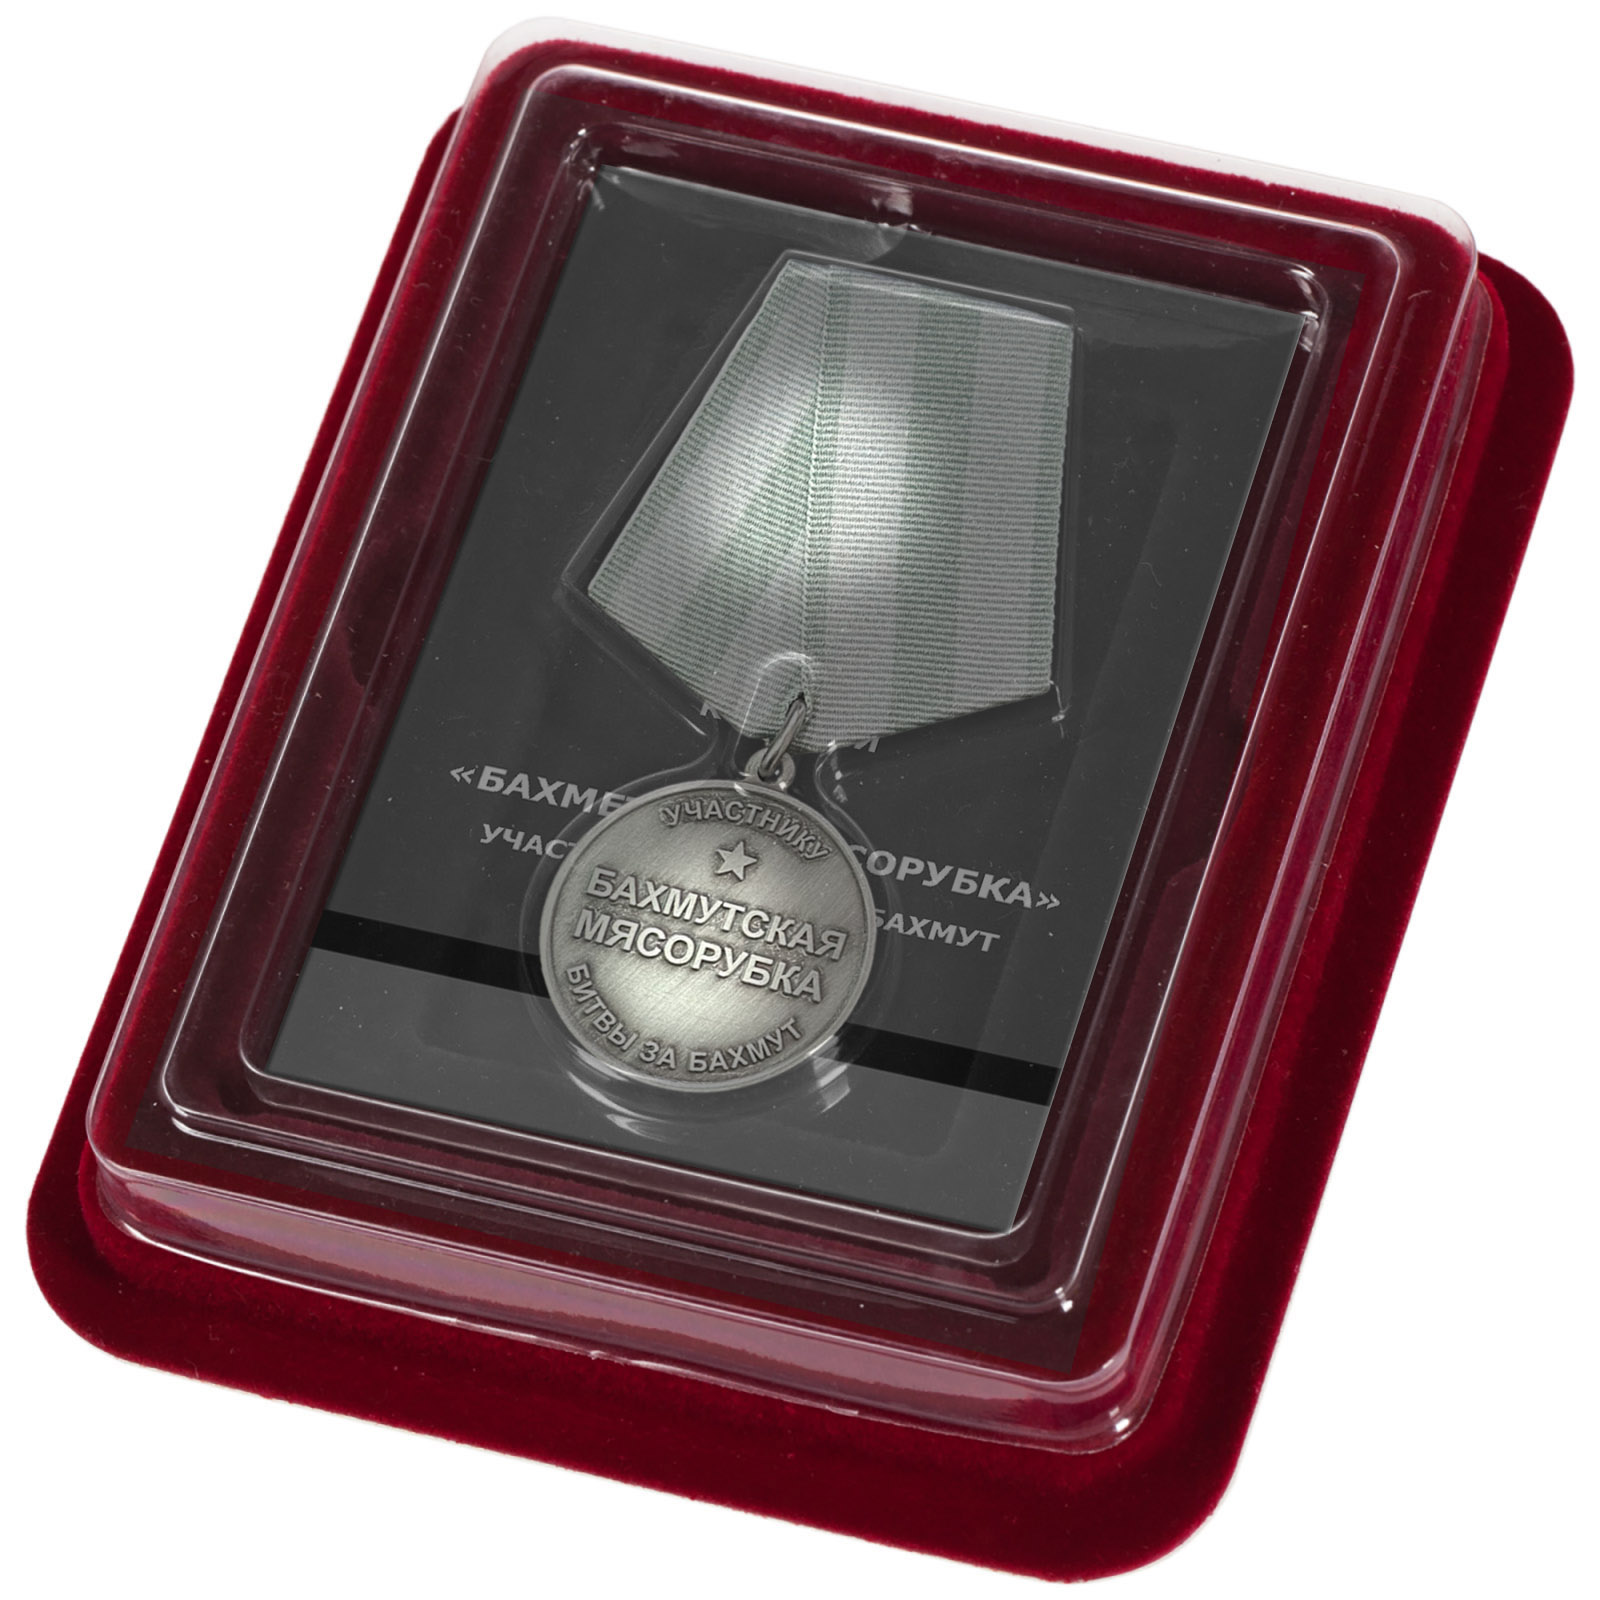 Медаль "Бахмутская мясорубка" участнику битвы за Бахмут